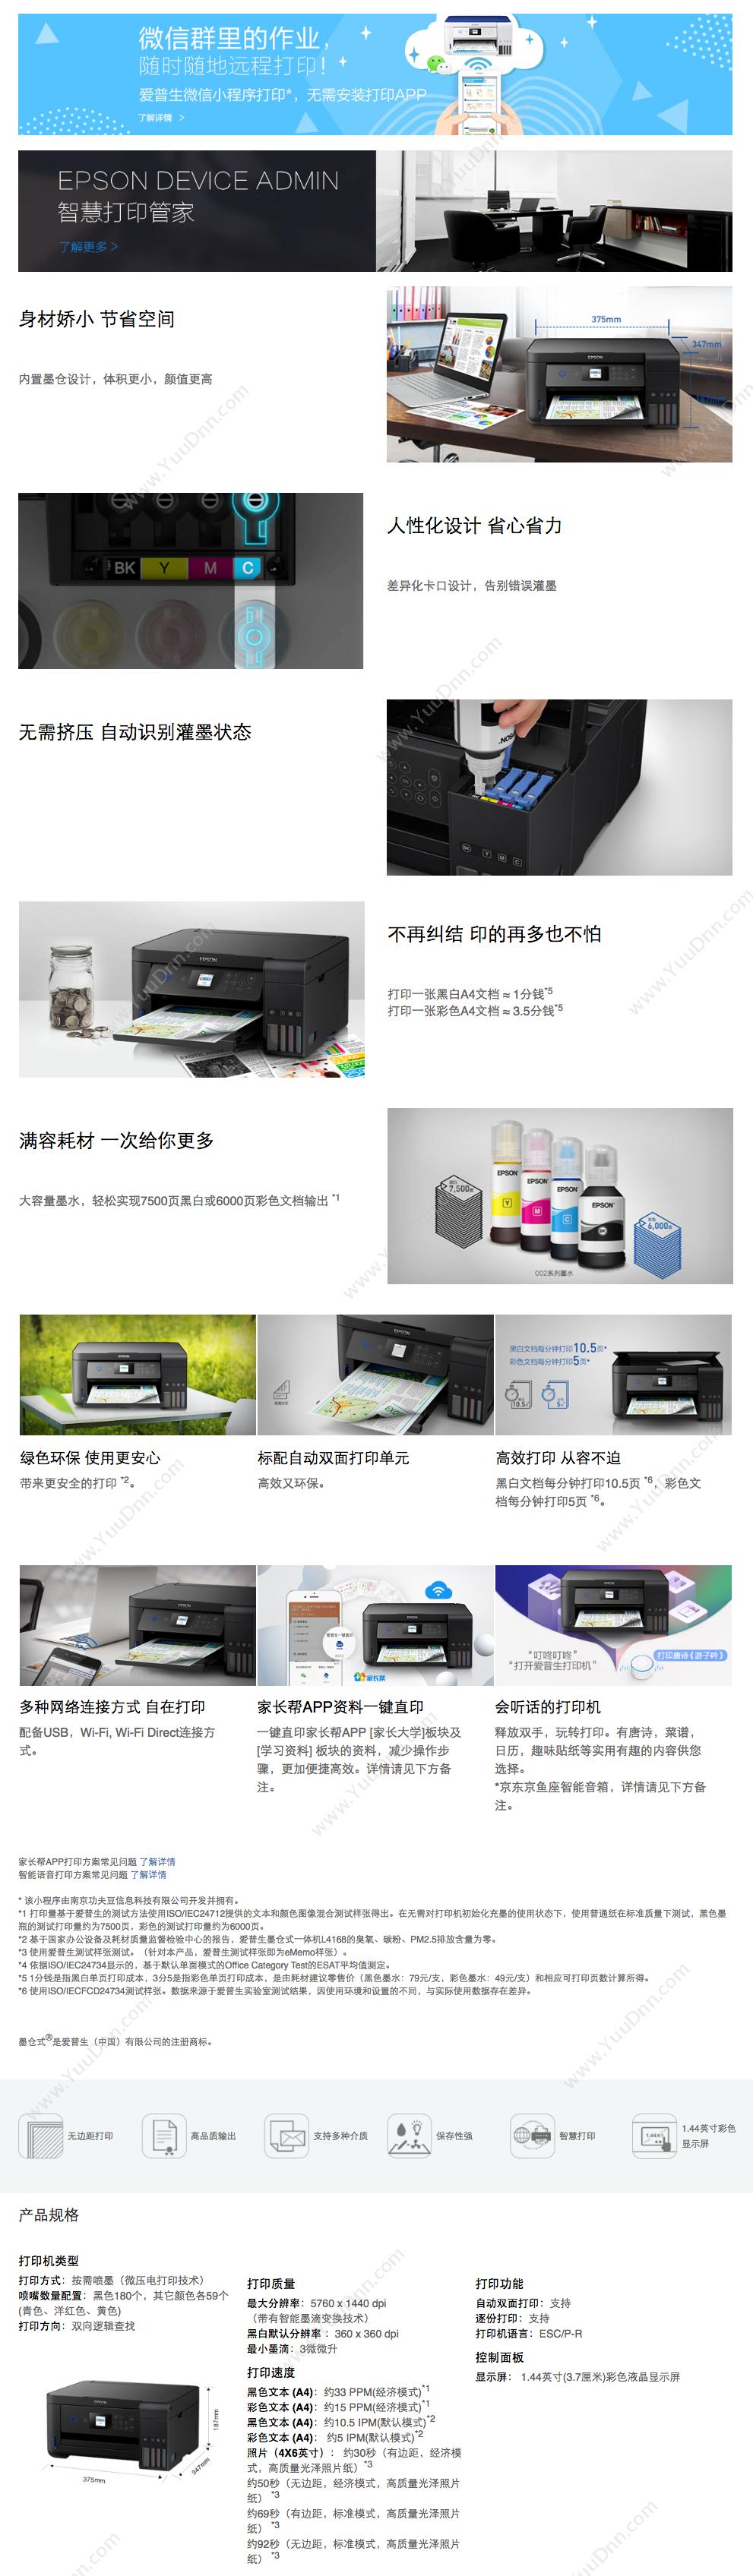 爱普生 Epson L4168 A4墨仓式打印机